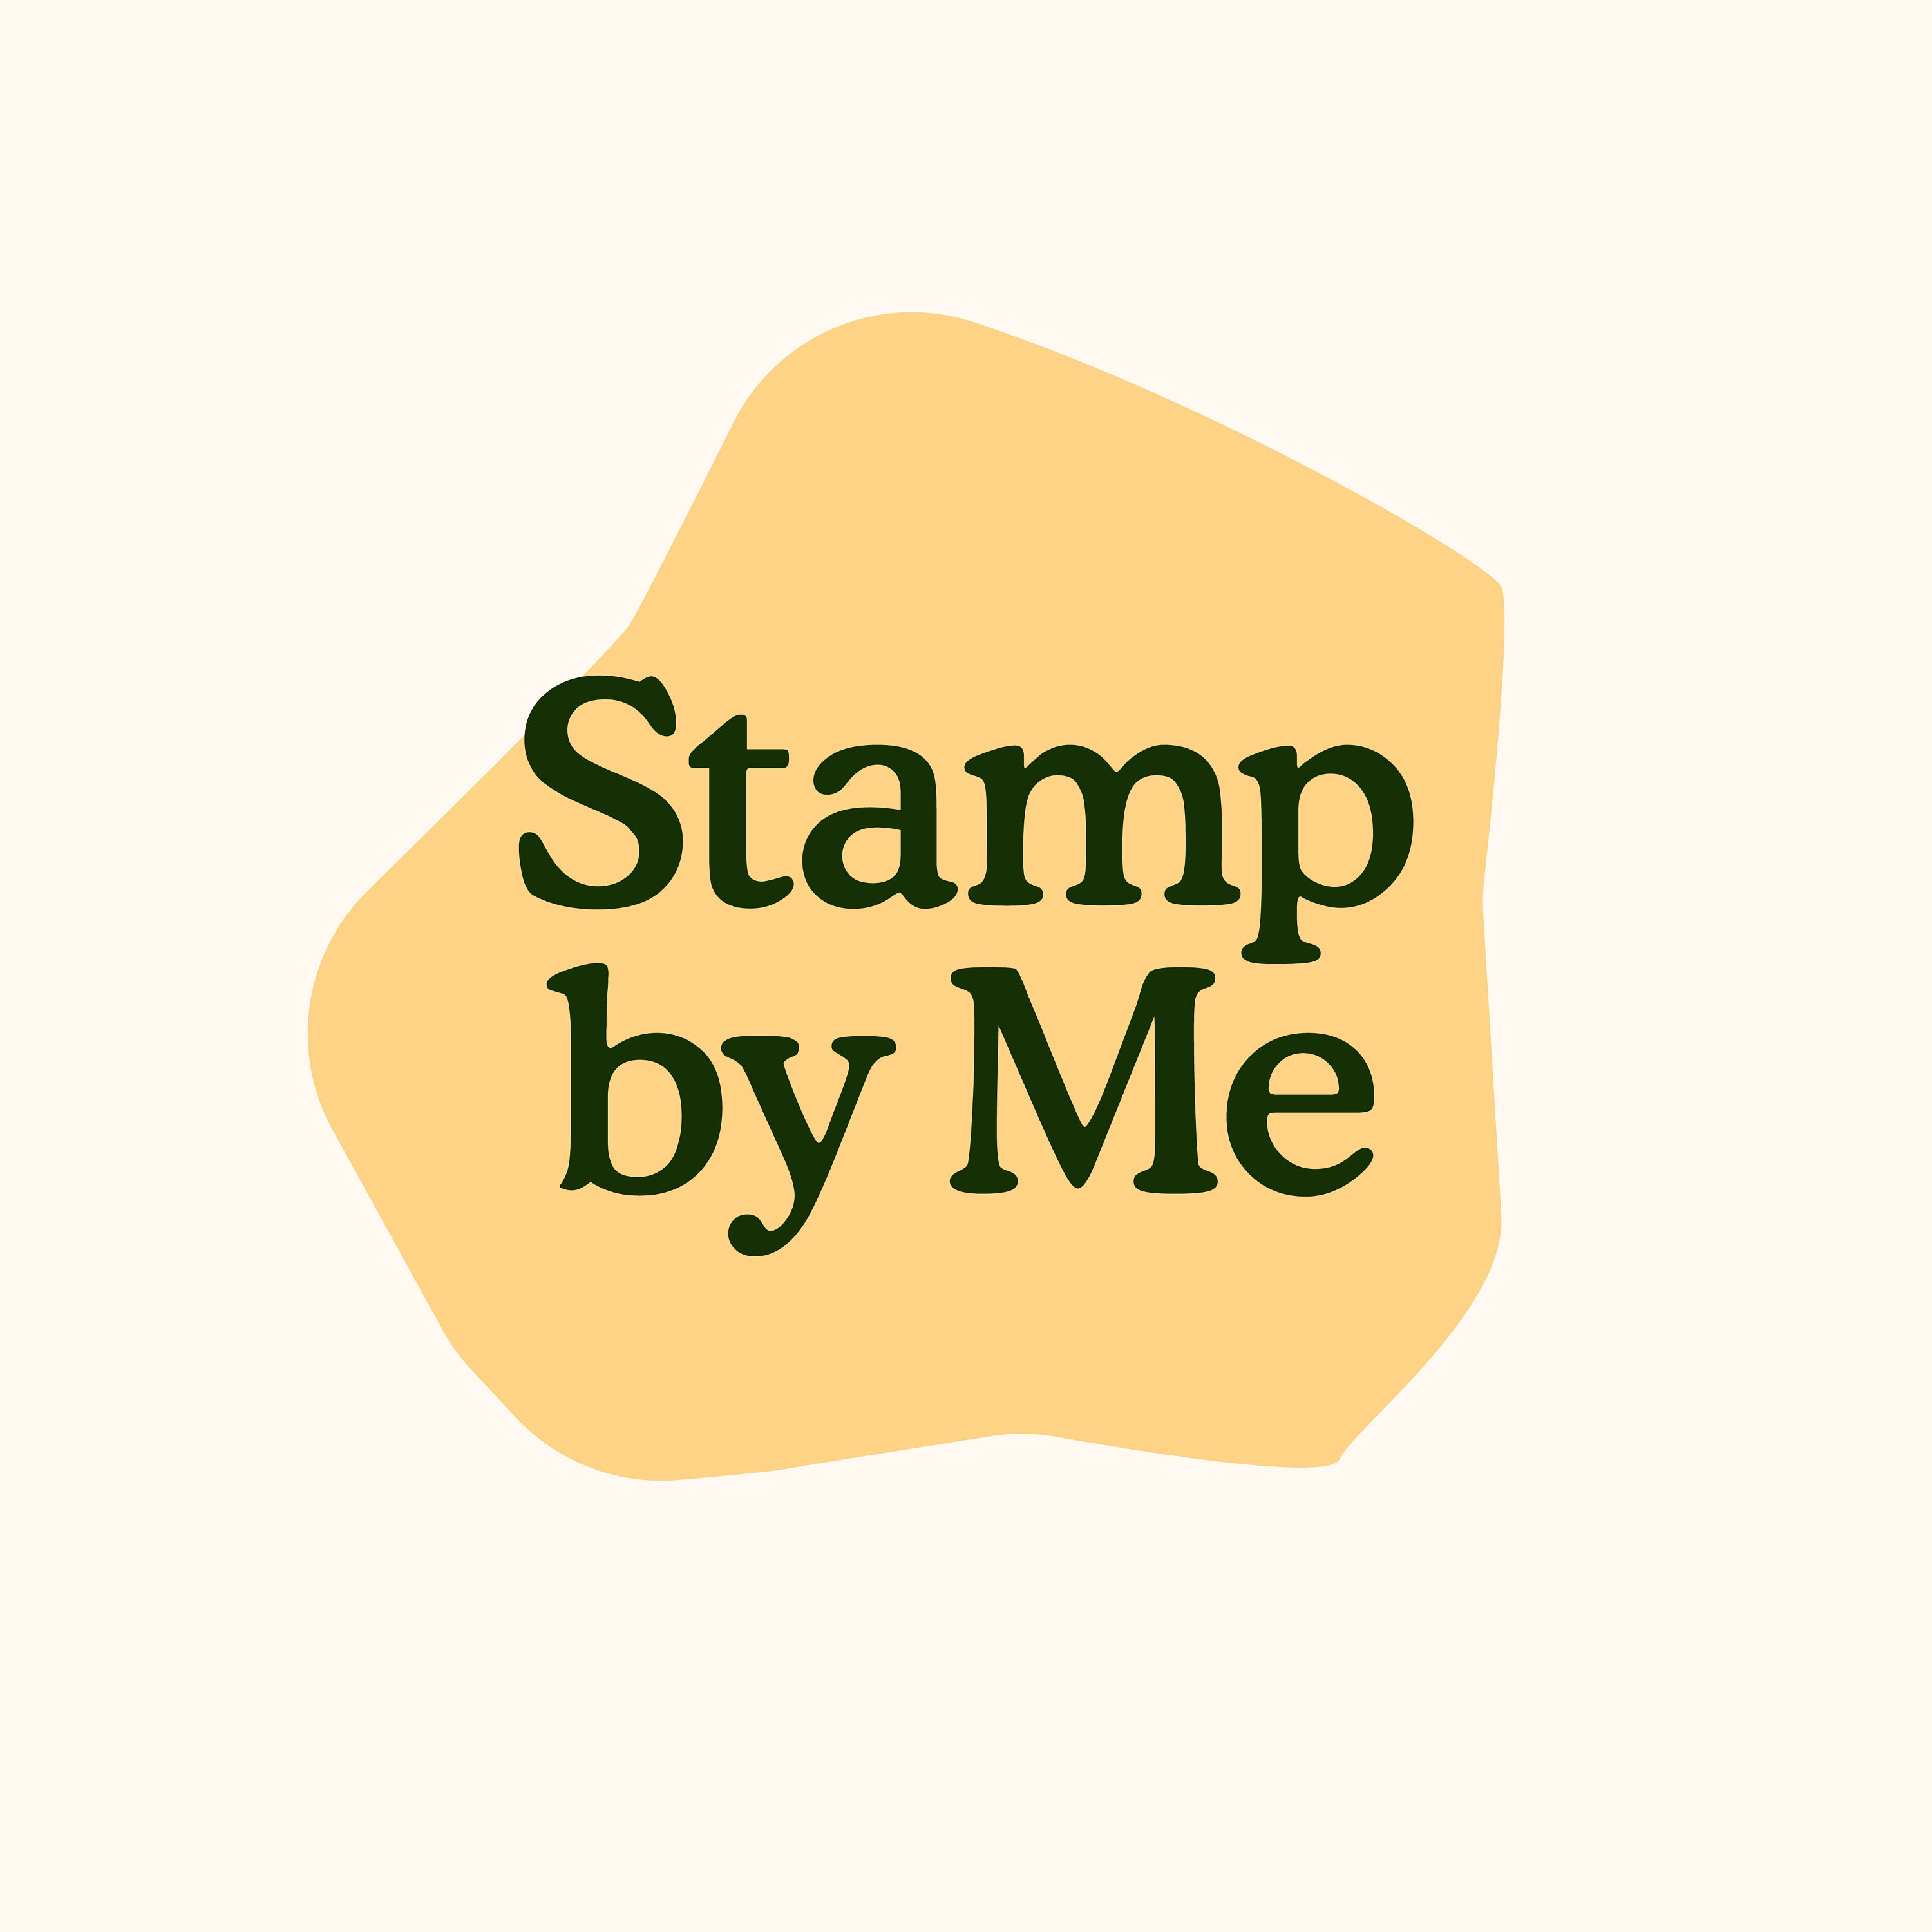 Logo Stamper 